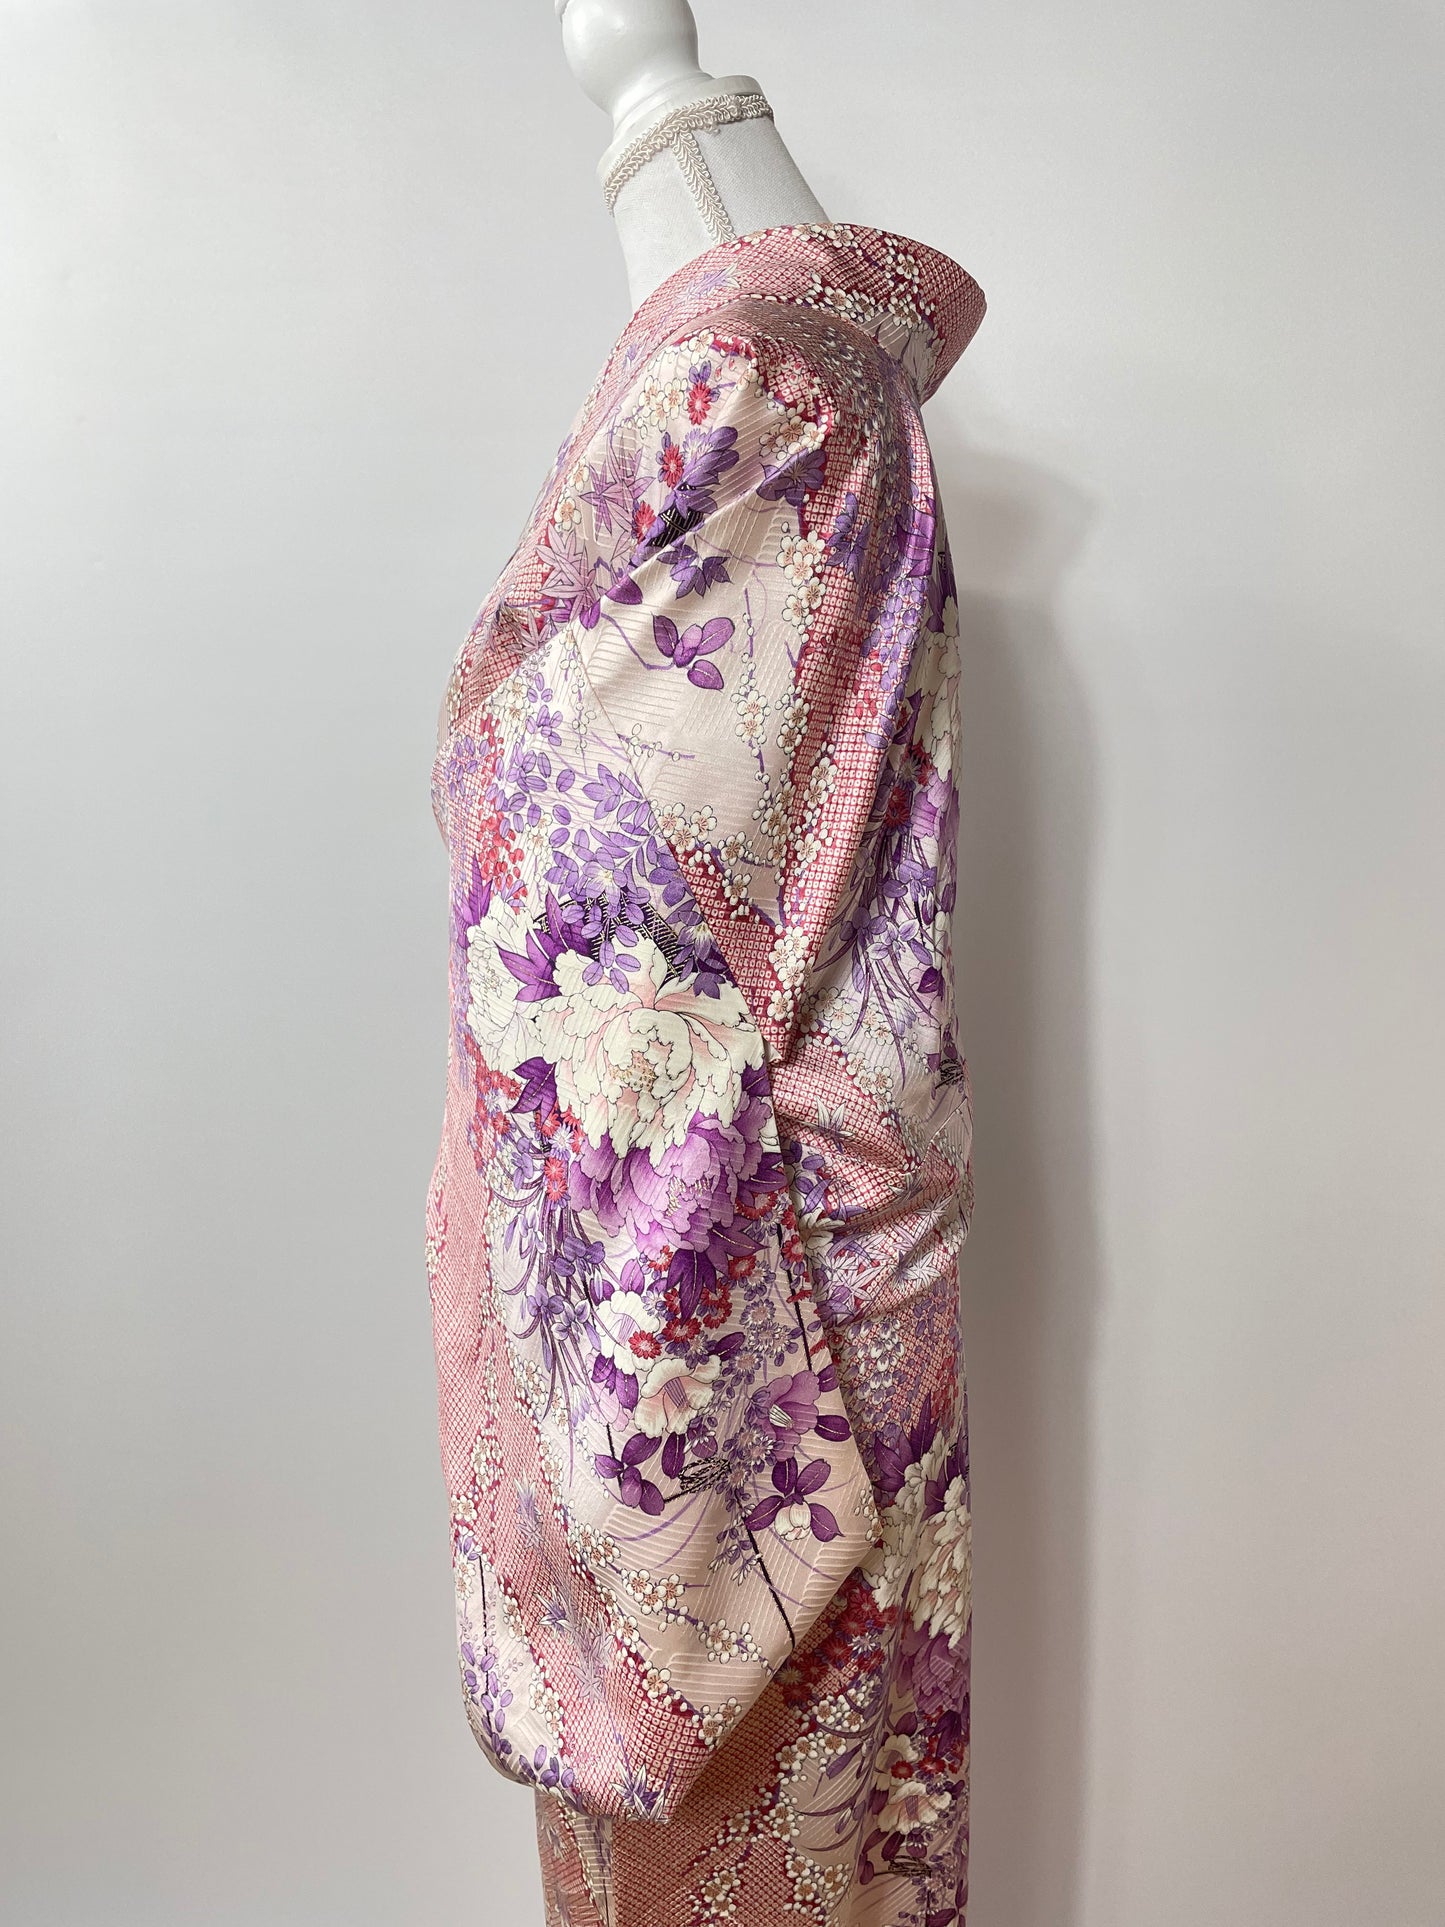 Original Silk Kimono (1900's - used)